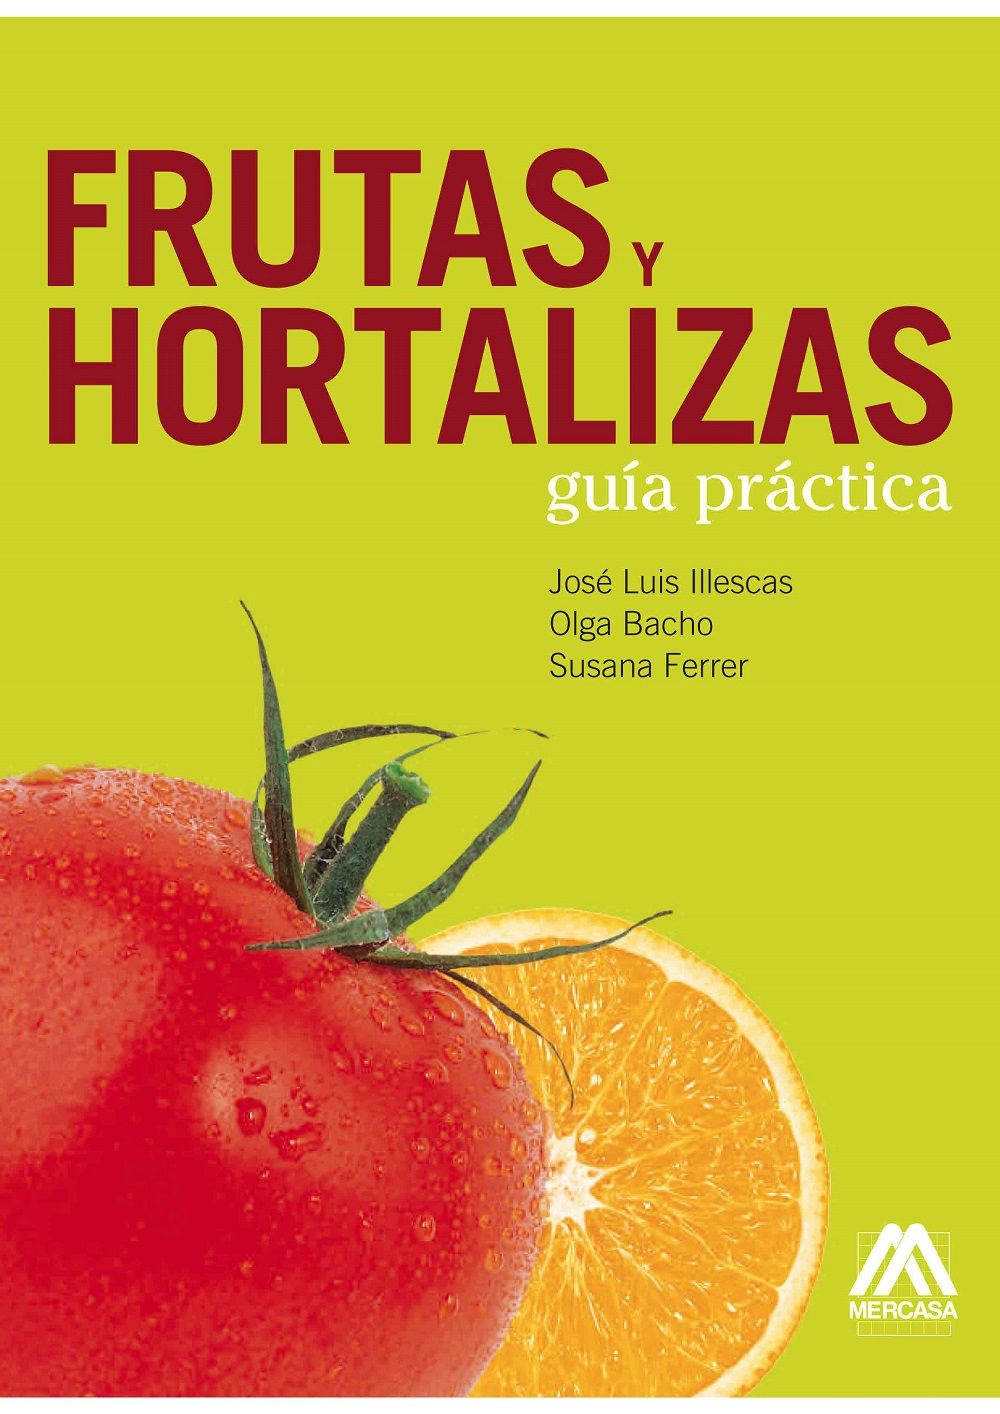 Guía practica de frutas y hortalizas